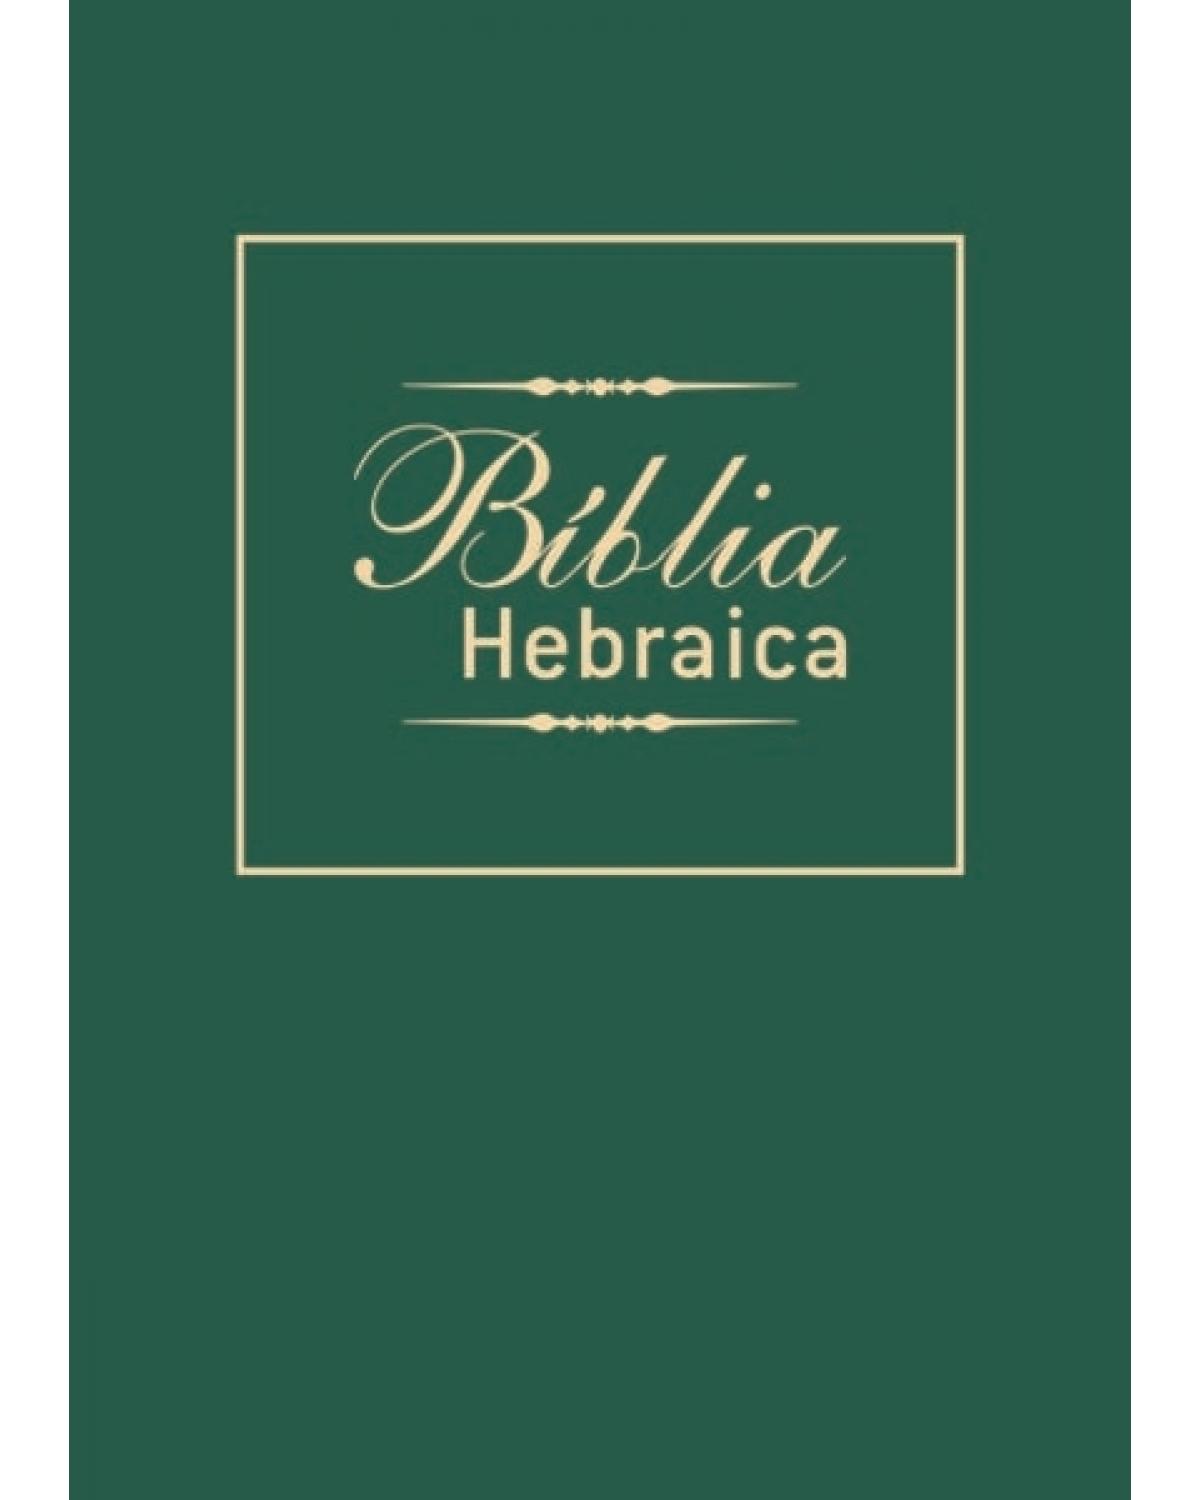 Bíblia hebraica - 1ª Edição | 2006